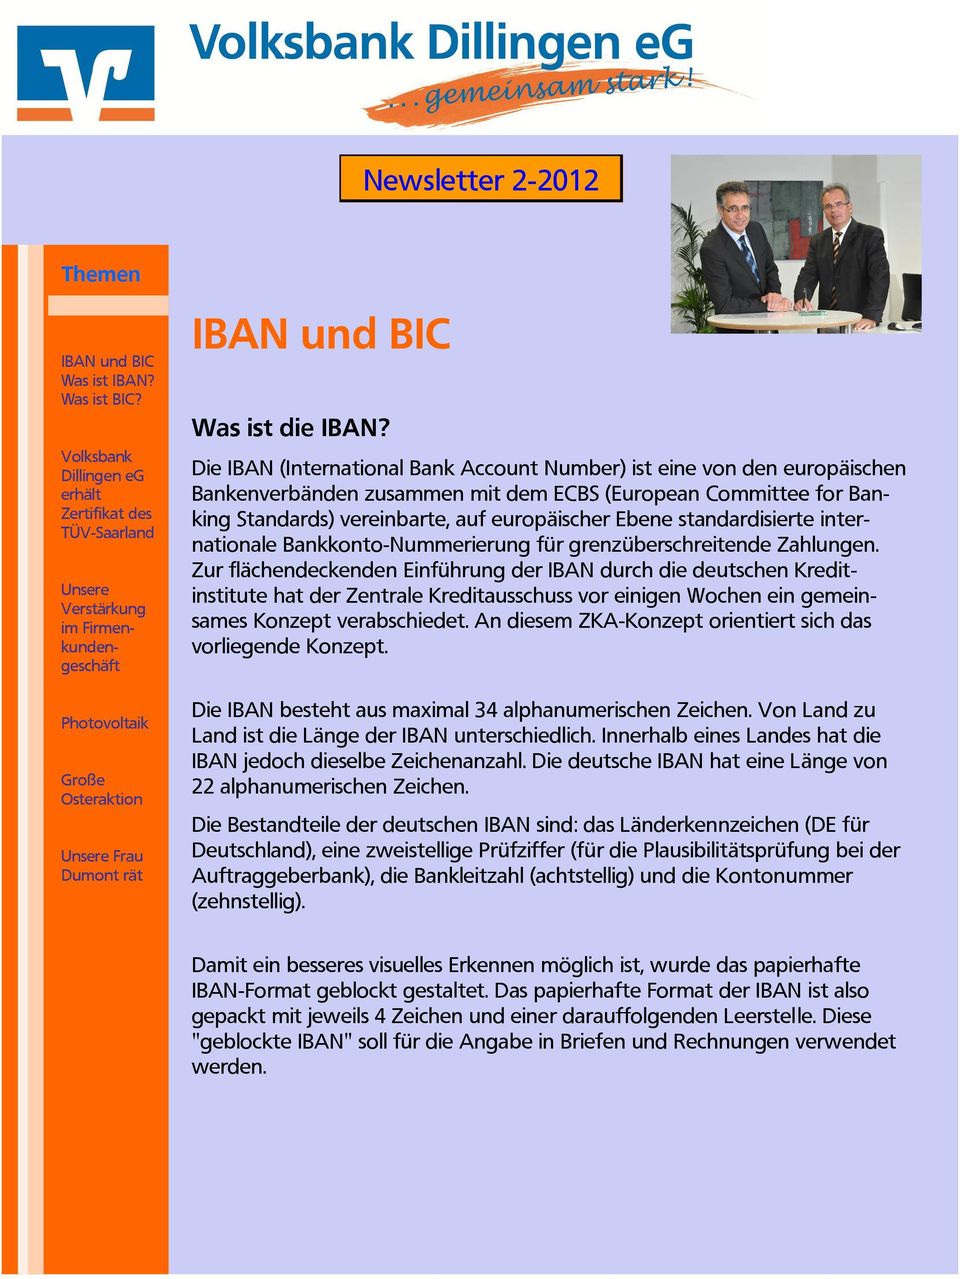 Die IBAN (International Bank Account Number) ist eine von den europäischen Bankenverbänden zusammen mit dem ECBS (European Committee for Banking Standards) vereinbarte, auf europäischer Ebene